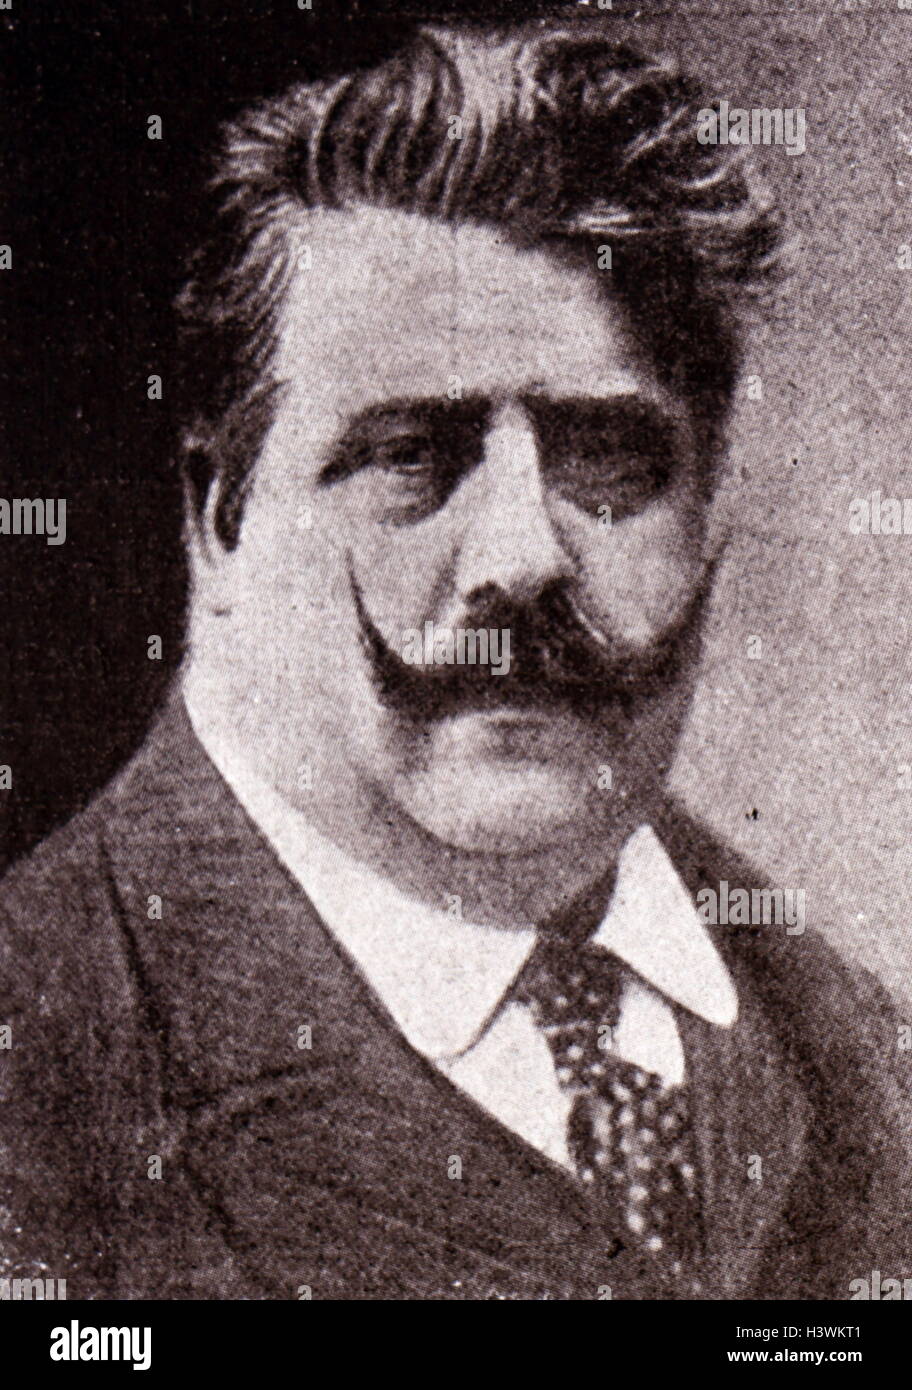 Portrait of Ruggero Leoncavallo (1857-1919) an Italian opera composer and librettist. Dated 20th Century Stock Photo